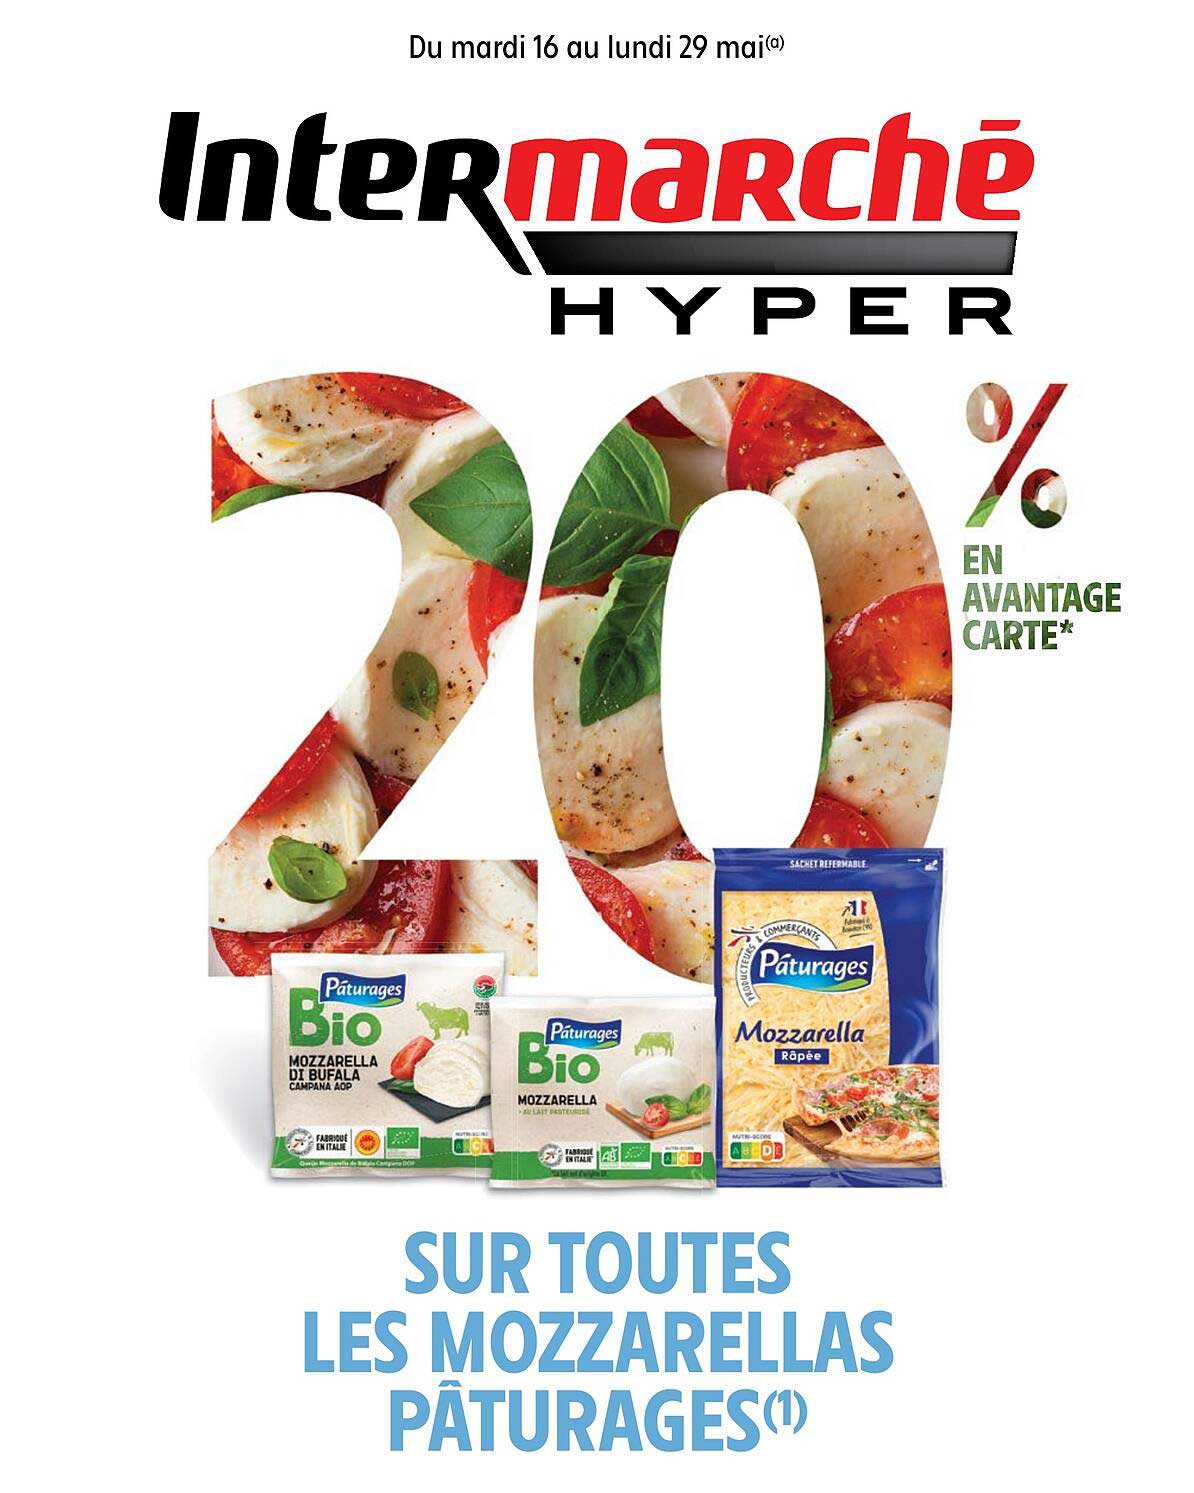 Promo Les Mozzarellas Pâturages Chez Intermarché Hyper Icataloguefr 